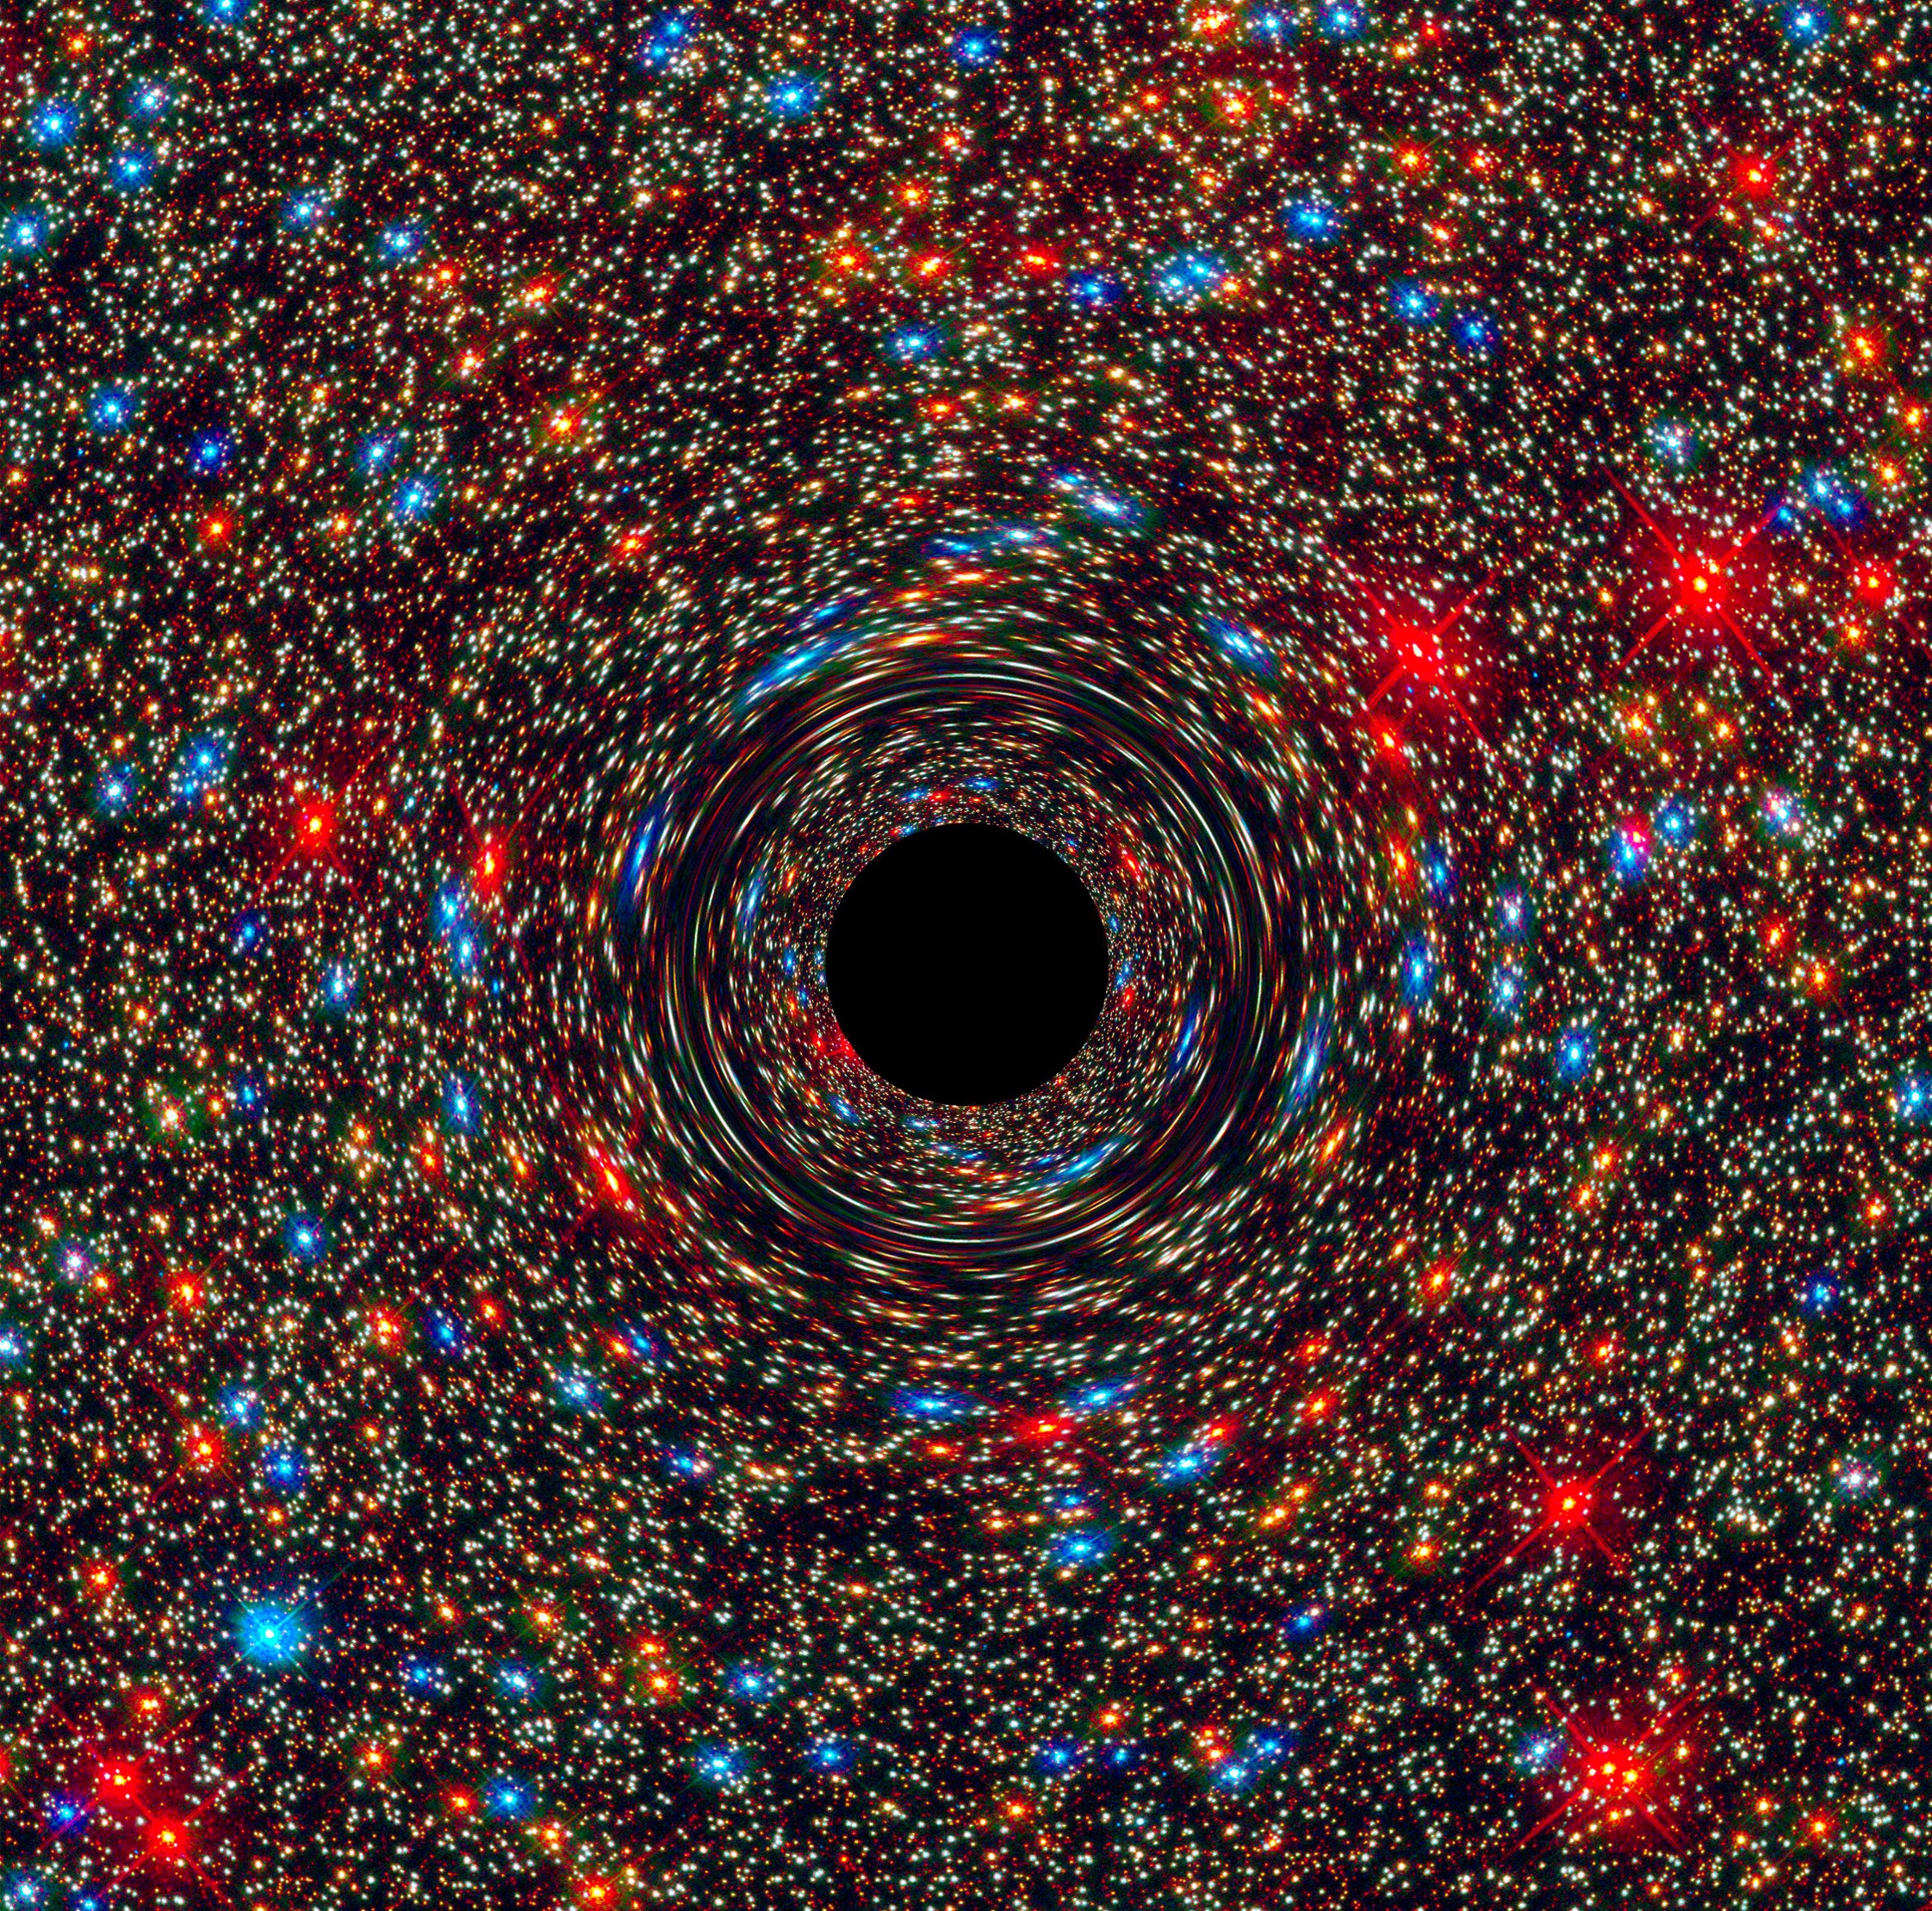 Nie jest to pierwotna czarna dziura, a komputerowa symulacja „normalnej” czarnej dziury znajdującej się w centrum galaktyki NGC 1600, jednej z najbardziej masywnych, które dotąd poznaliśmy.